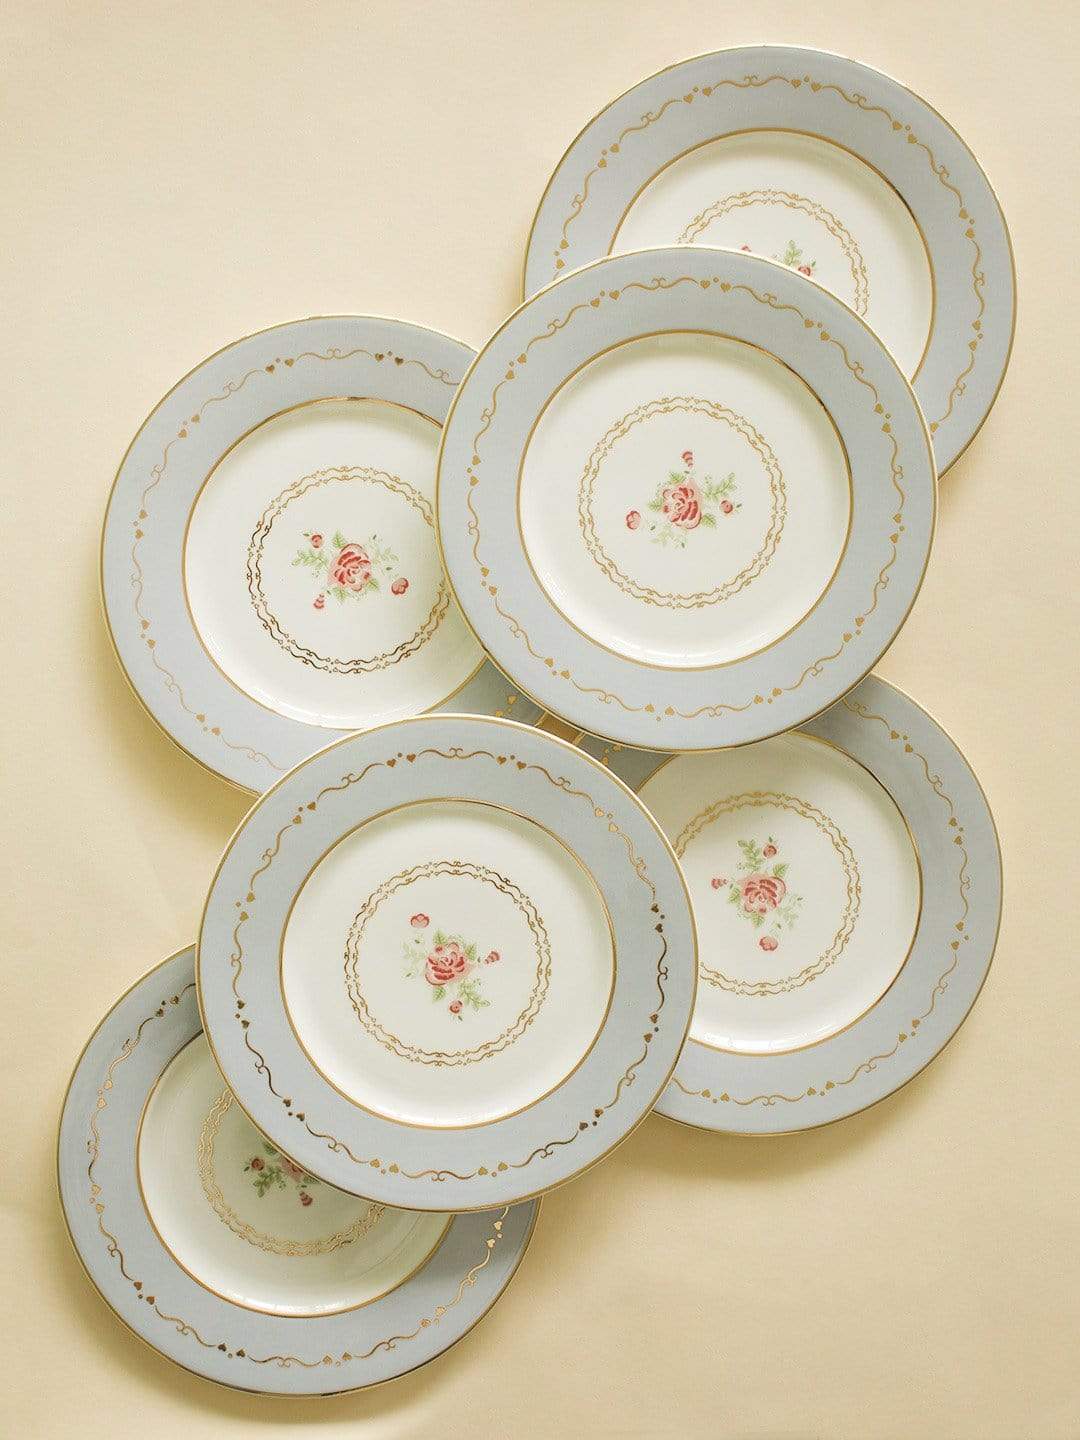 Vintage Rose Dessert Plates Set of 6 -Powder Blue